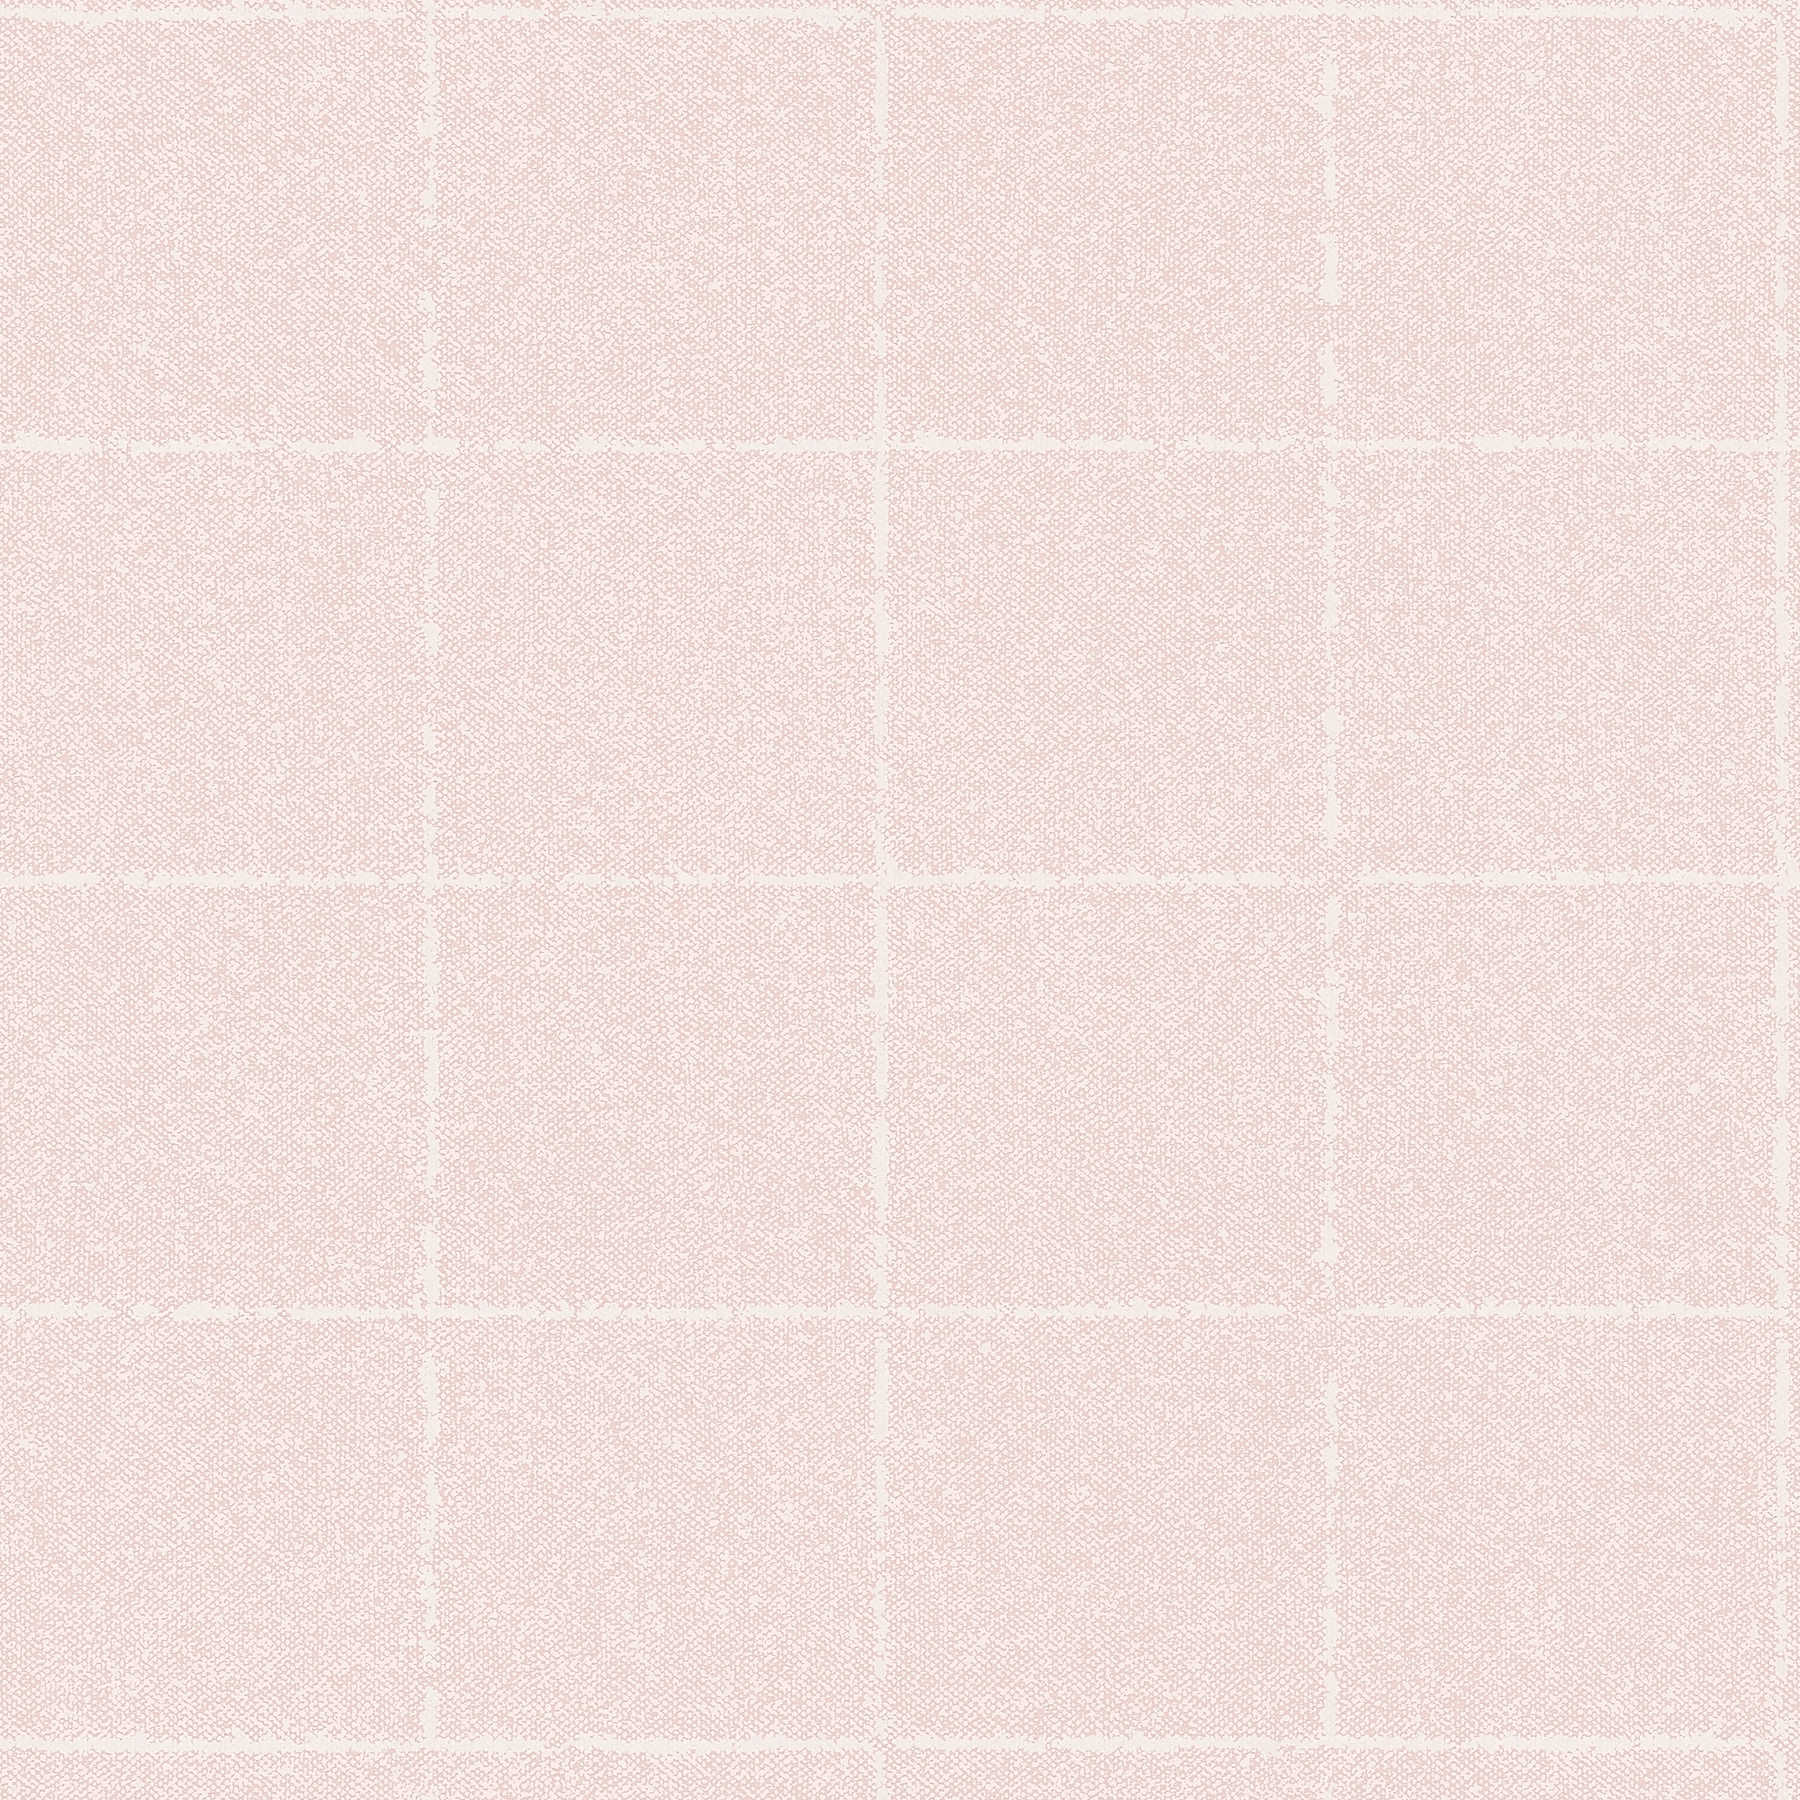 Papier peint à carreaux, aspect textile, texturé - rose, blanc, crème
